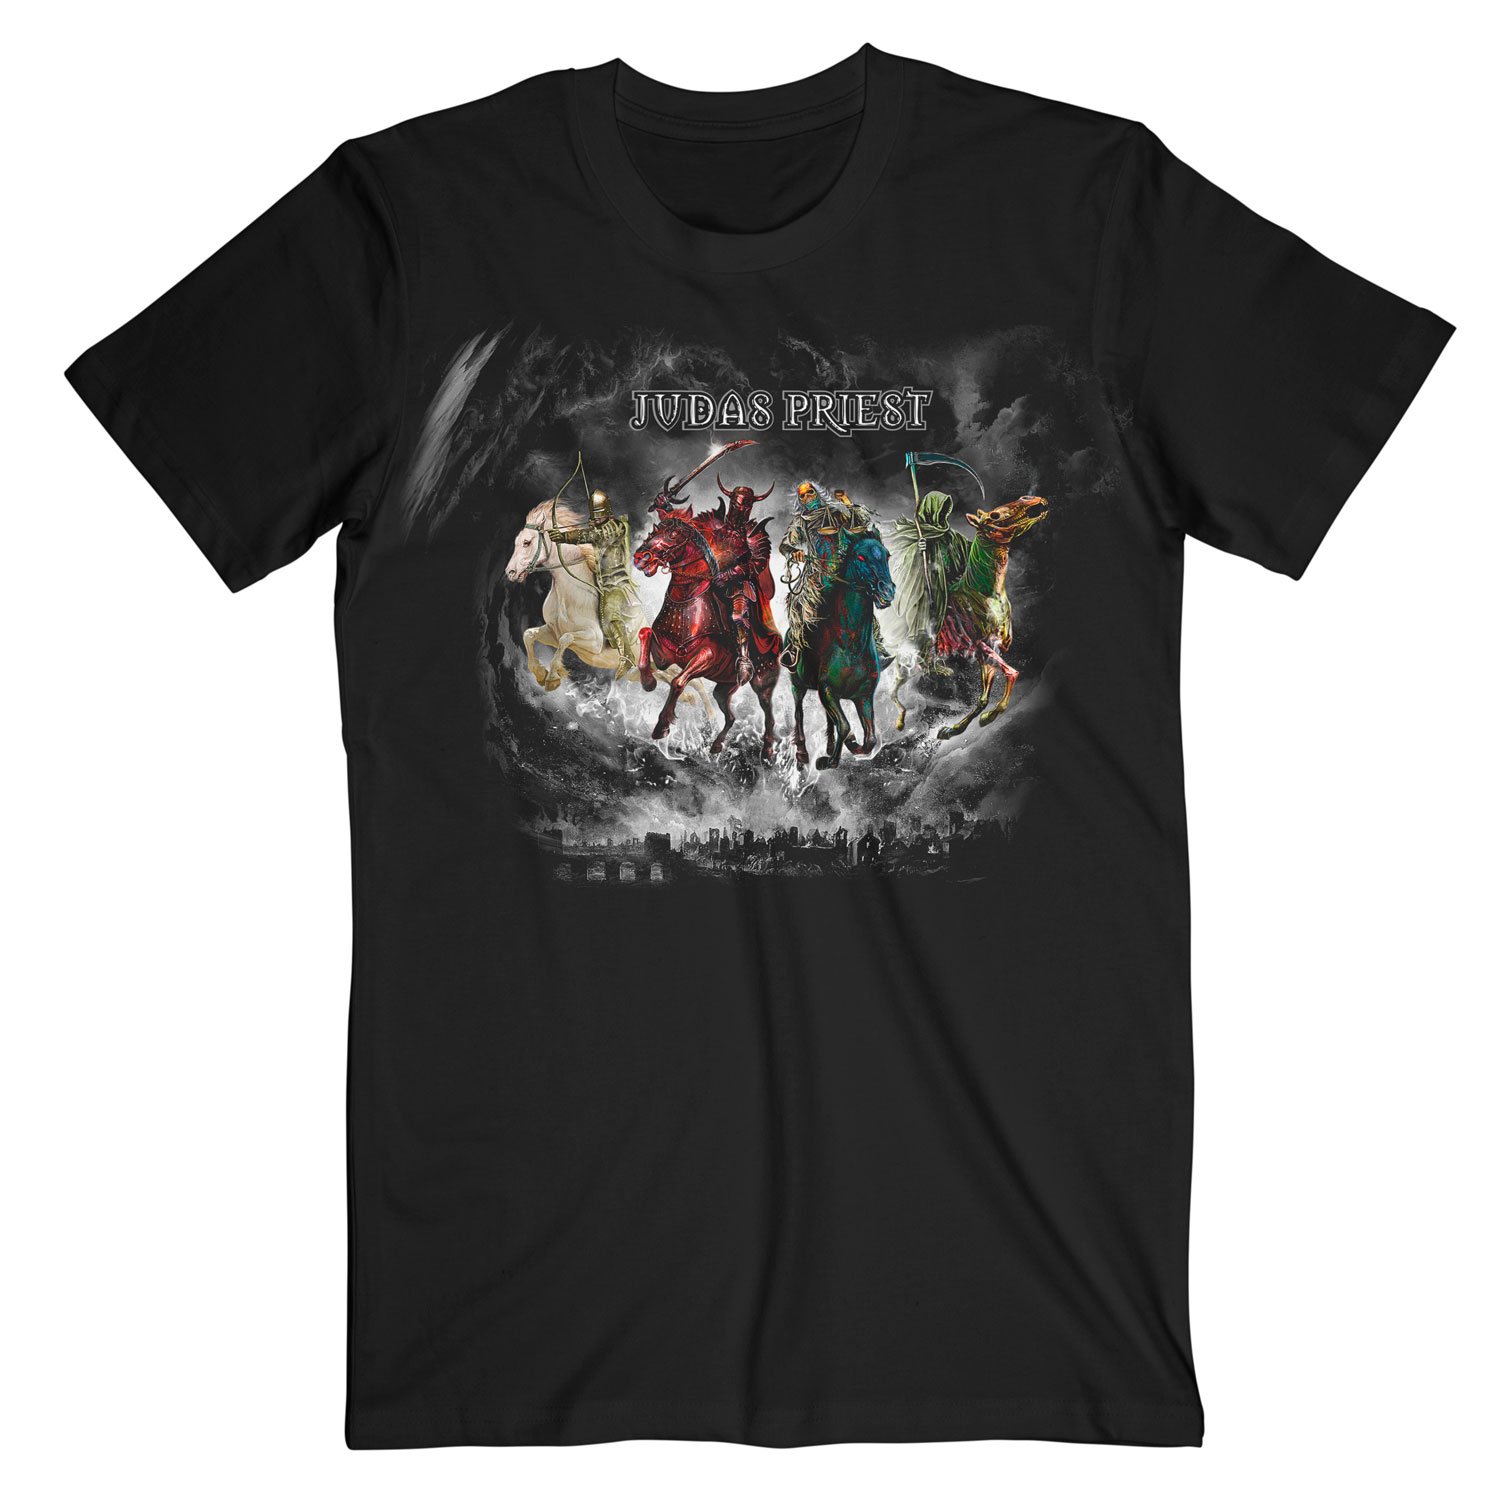 Judas Priest - Four Horsemen T-Shirt